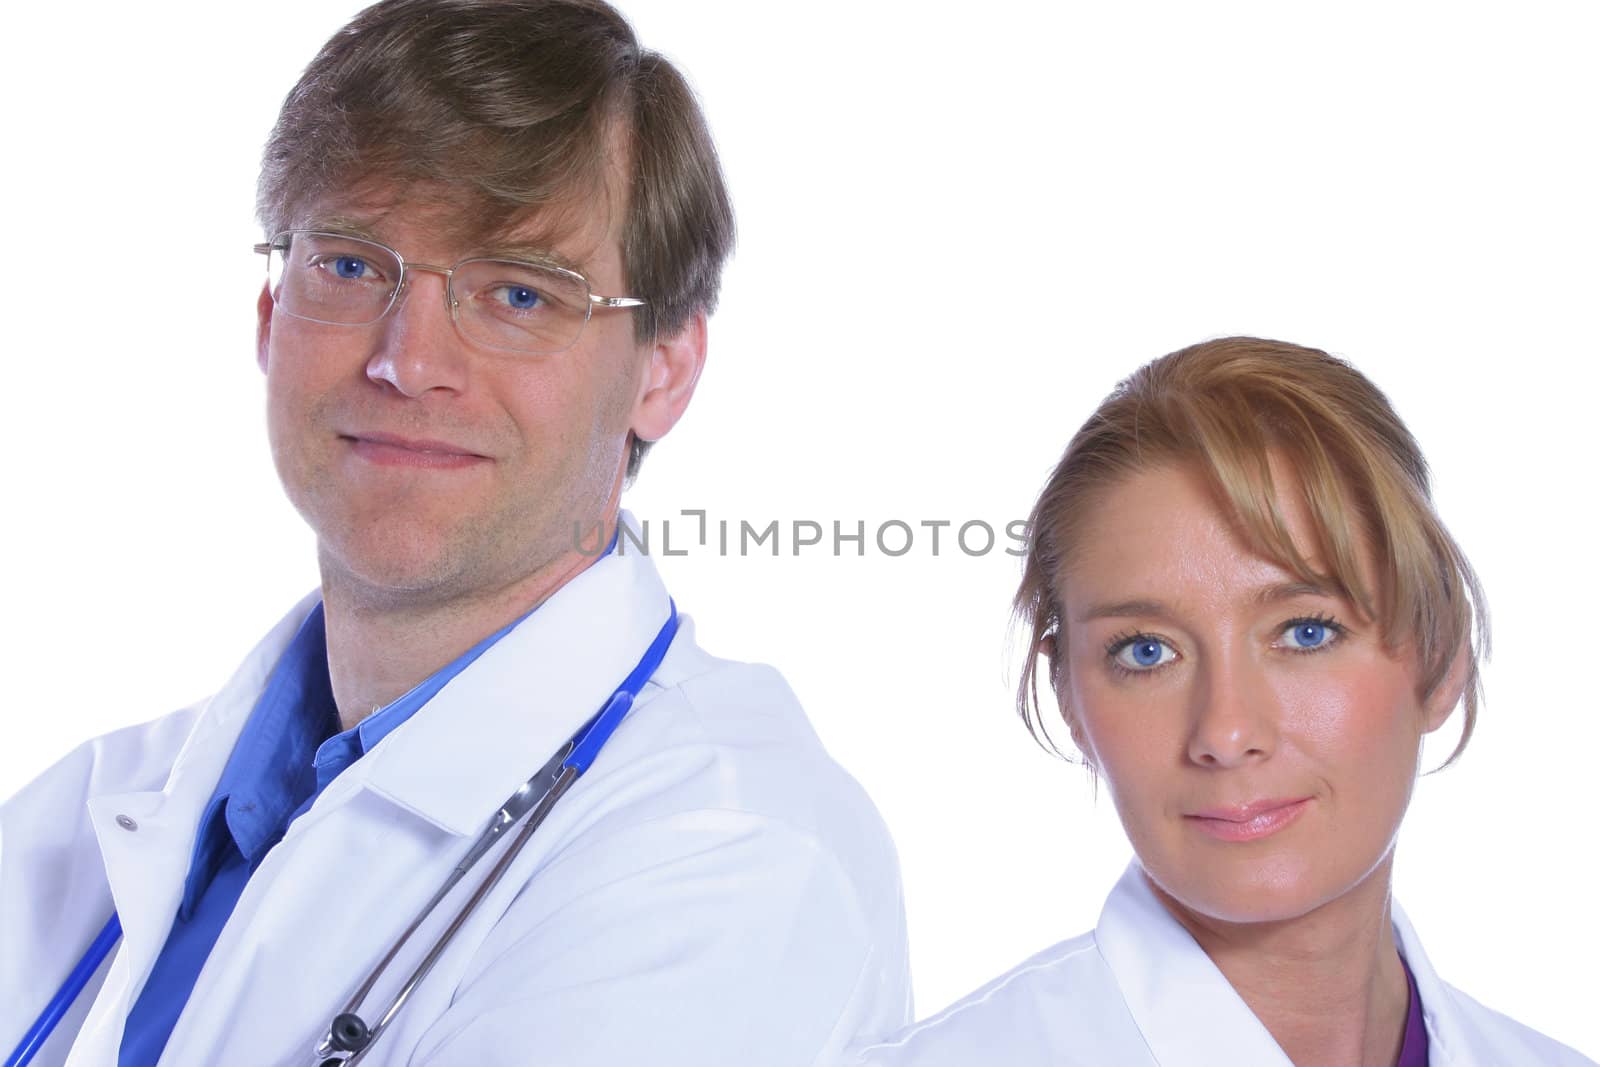 Medical team by jarenwicklund